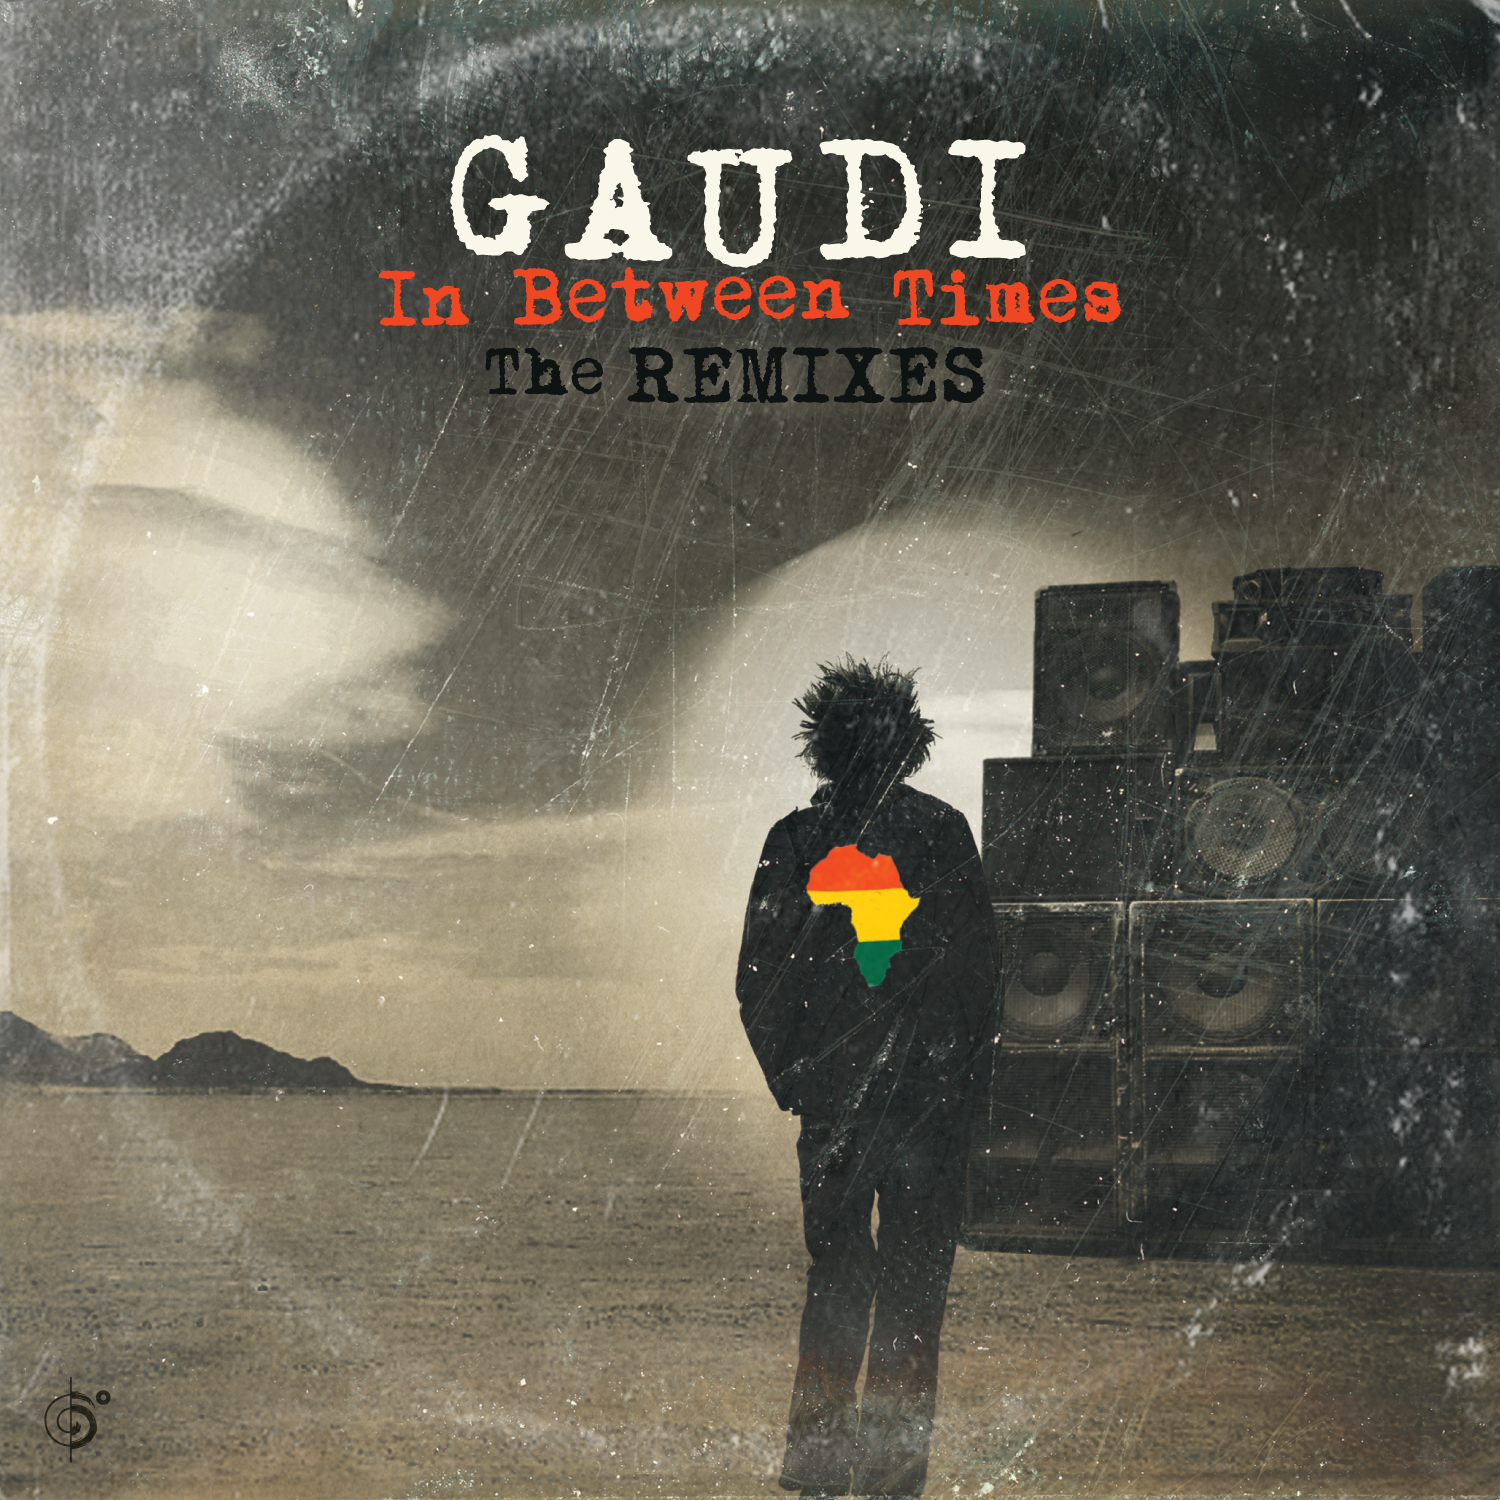 Gaudi – In Between Times (The Remixes)